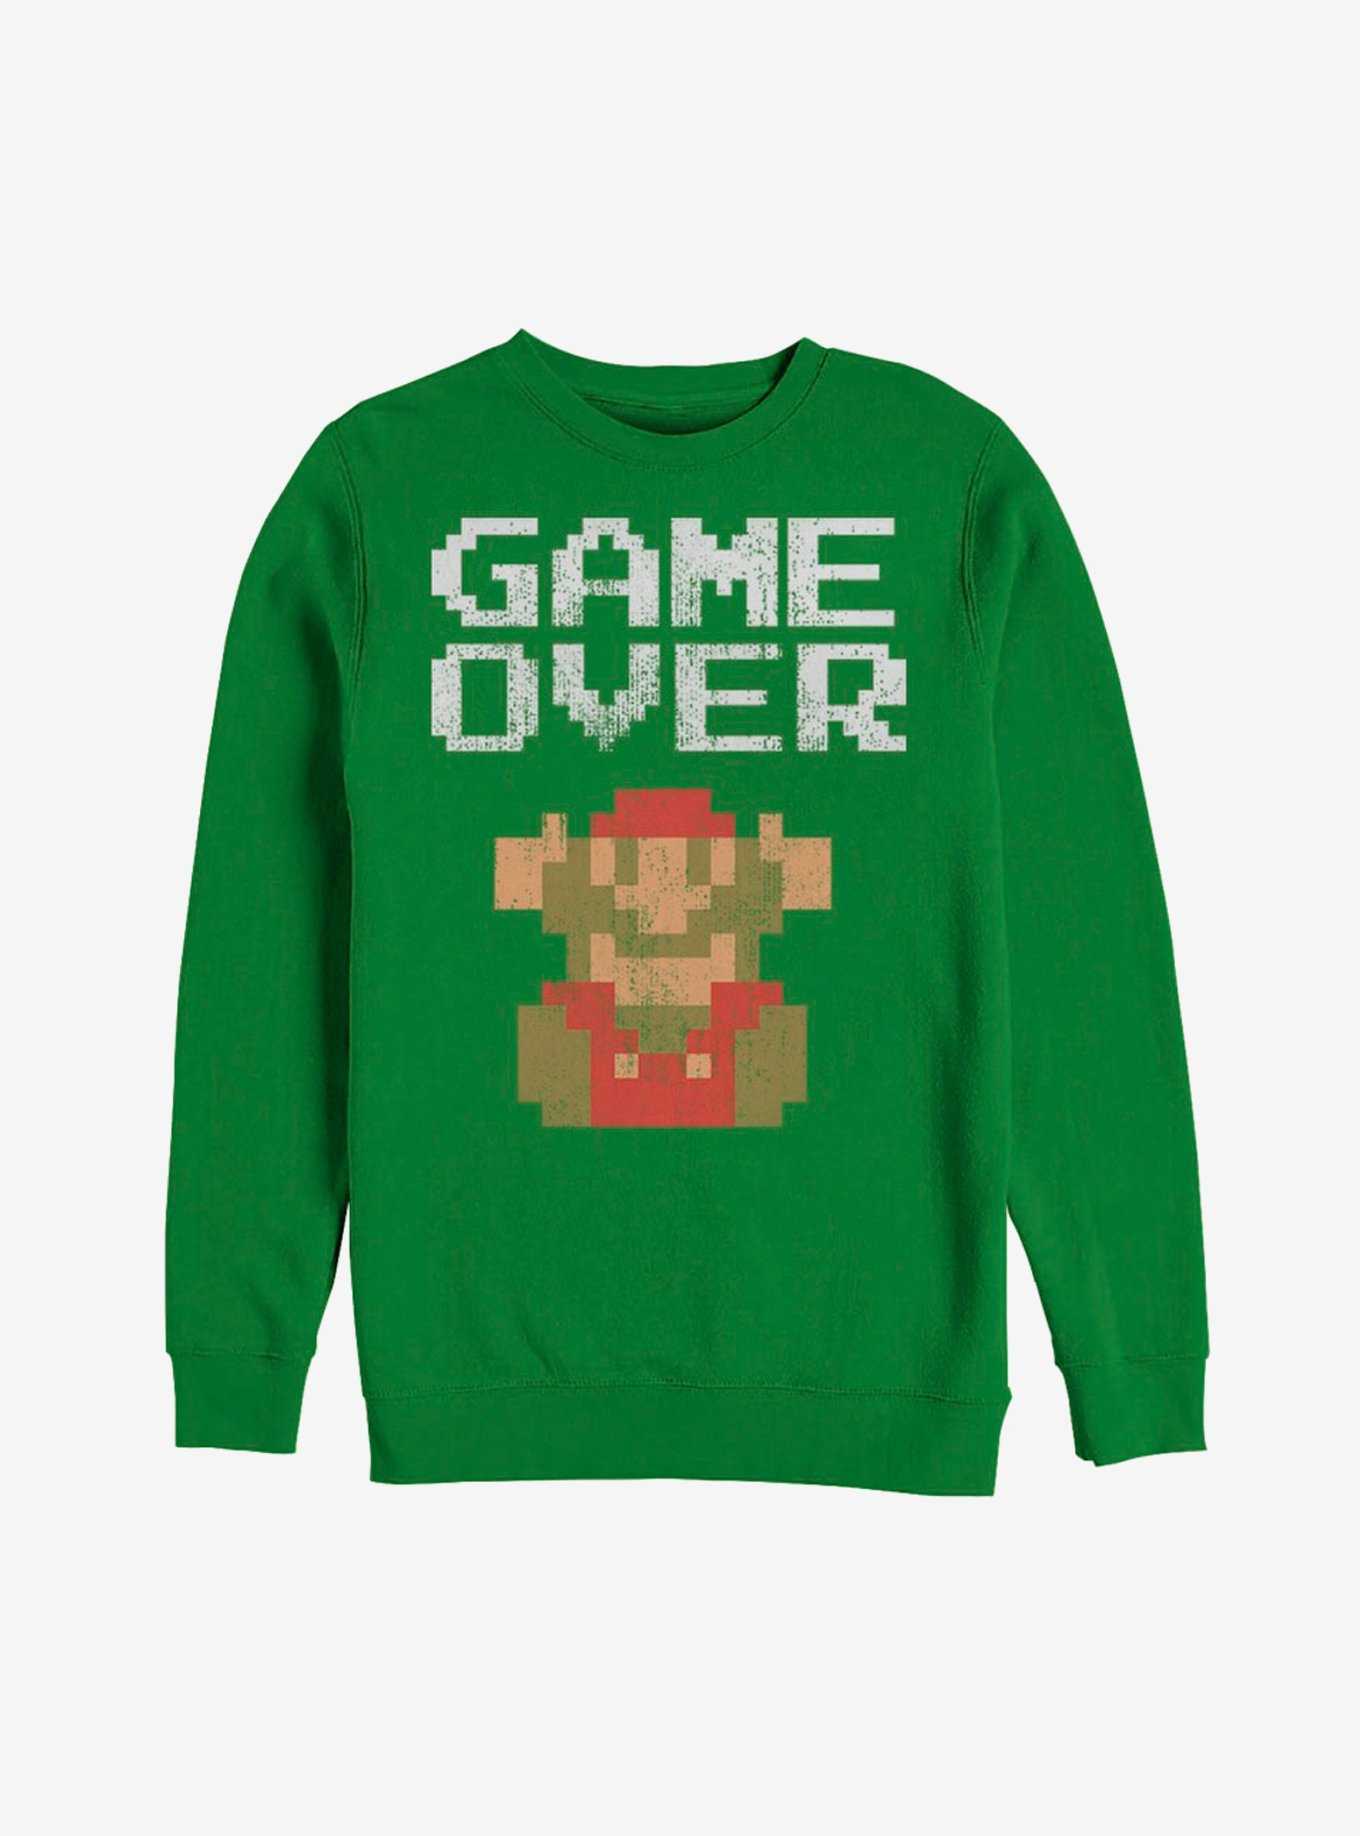 Nintendo Mario Game Over Sweatshirt, , hi-res